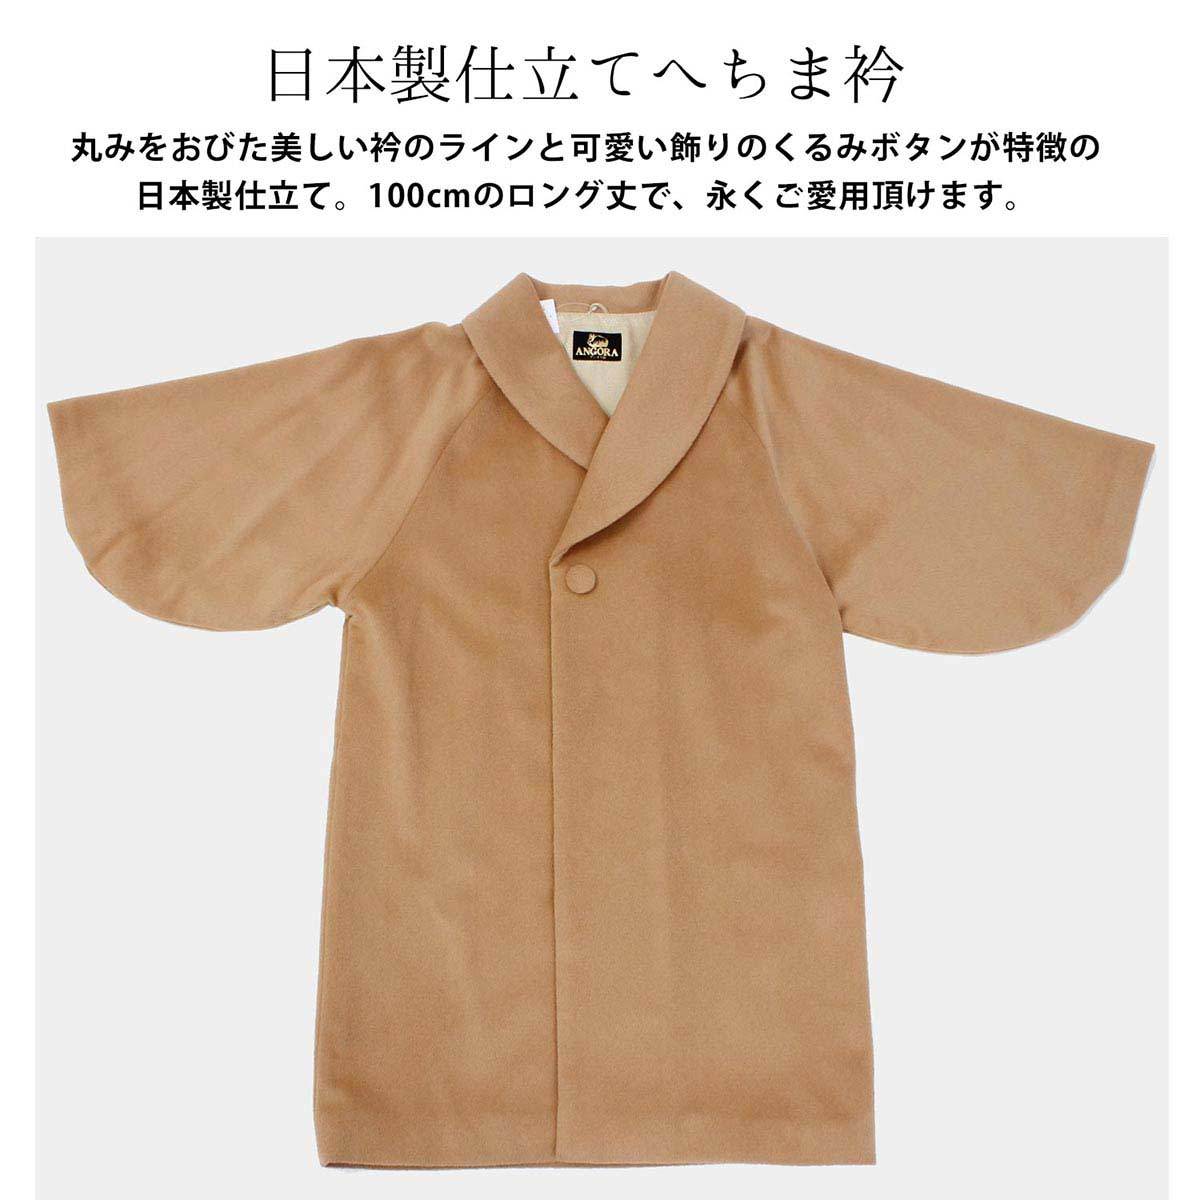 日本製 レディース 和装コート アンゴラ混 へちま衿コート 全4色 オフ 